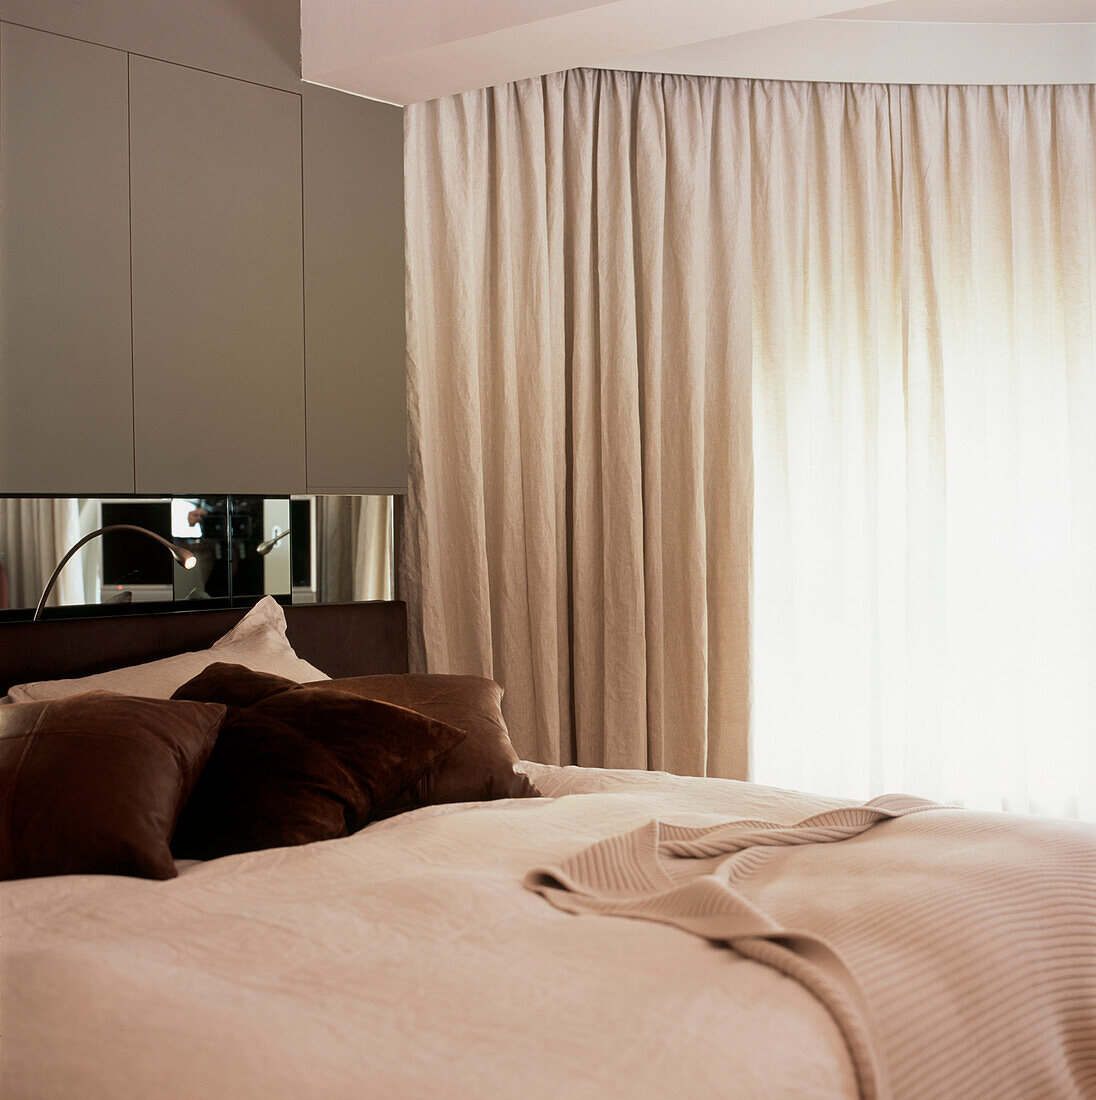 Schlafzimmerdetail mit Deckenkissen und Spiegel mit Leinenvorhängen in voller Länge